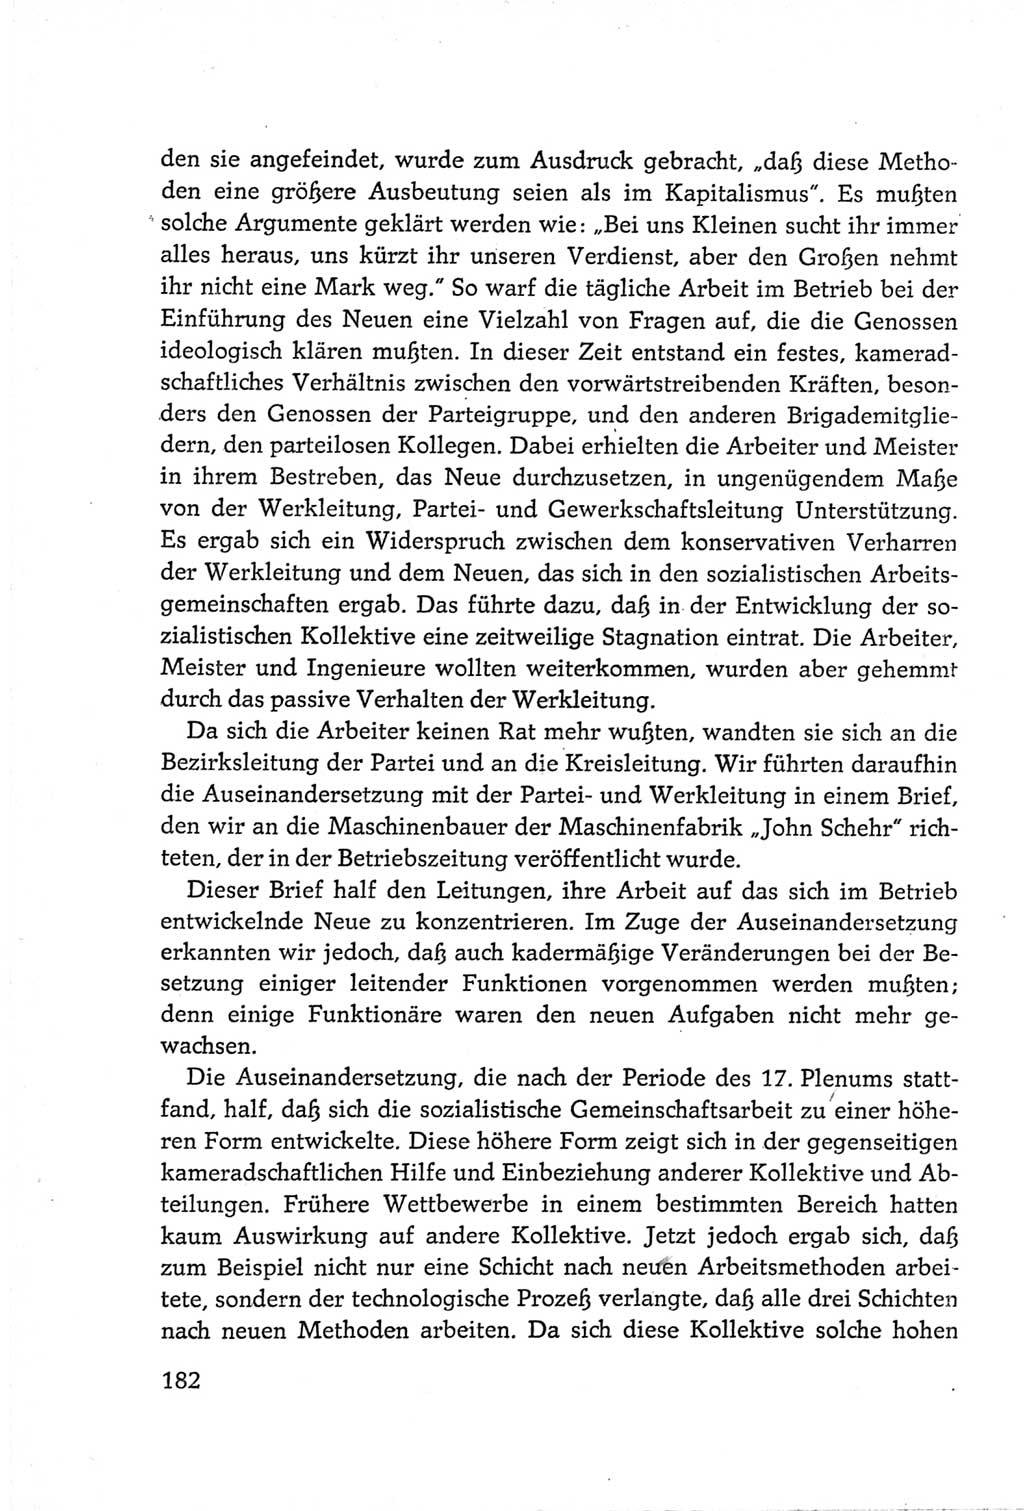 Protokoll der Verhandlungen des Ⅵ. Parteitages der Sozialistischen Einheitspartei Deutschlands (SED) [Deutsche Demokratische Republik (DDR)] 1963, Band Ⅲ, Seite 182 (Prot. Verh. Ⅵ. PT SED DDR 1963, Bd. Ⅲ, S. 182)